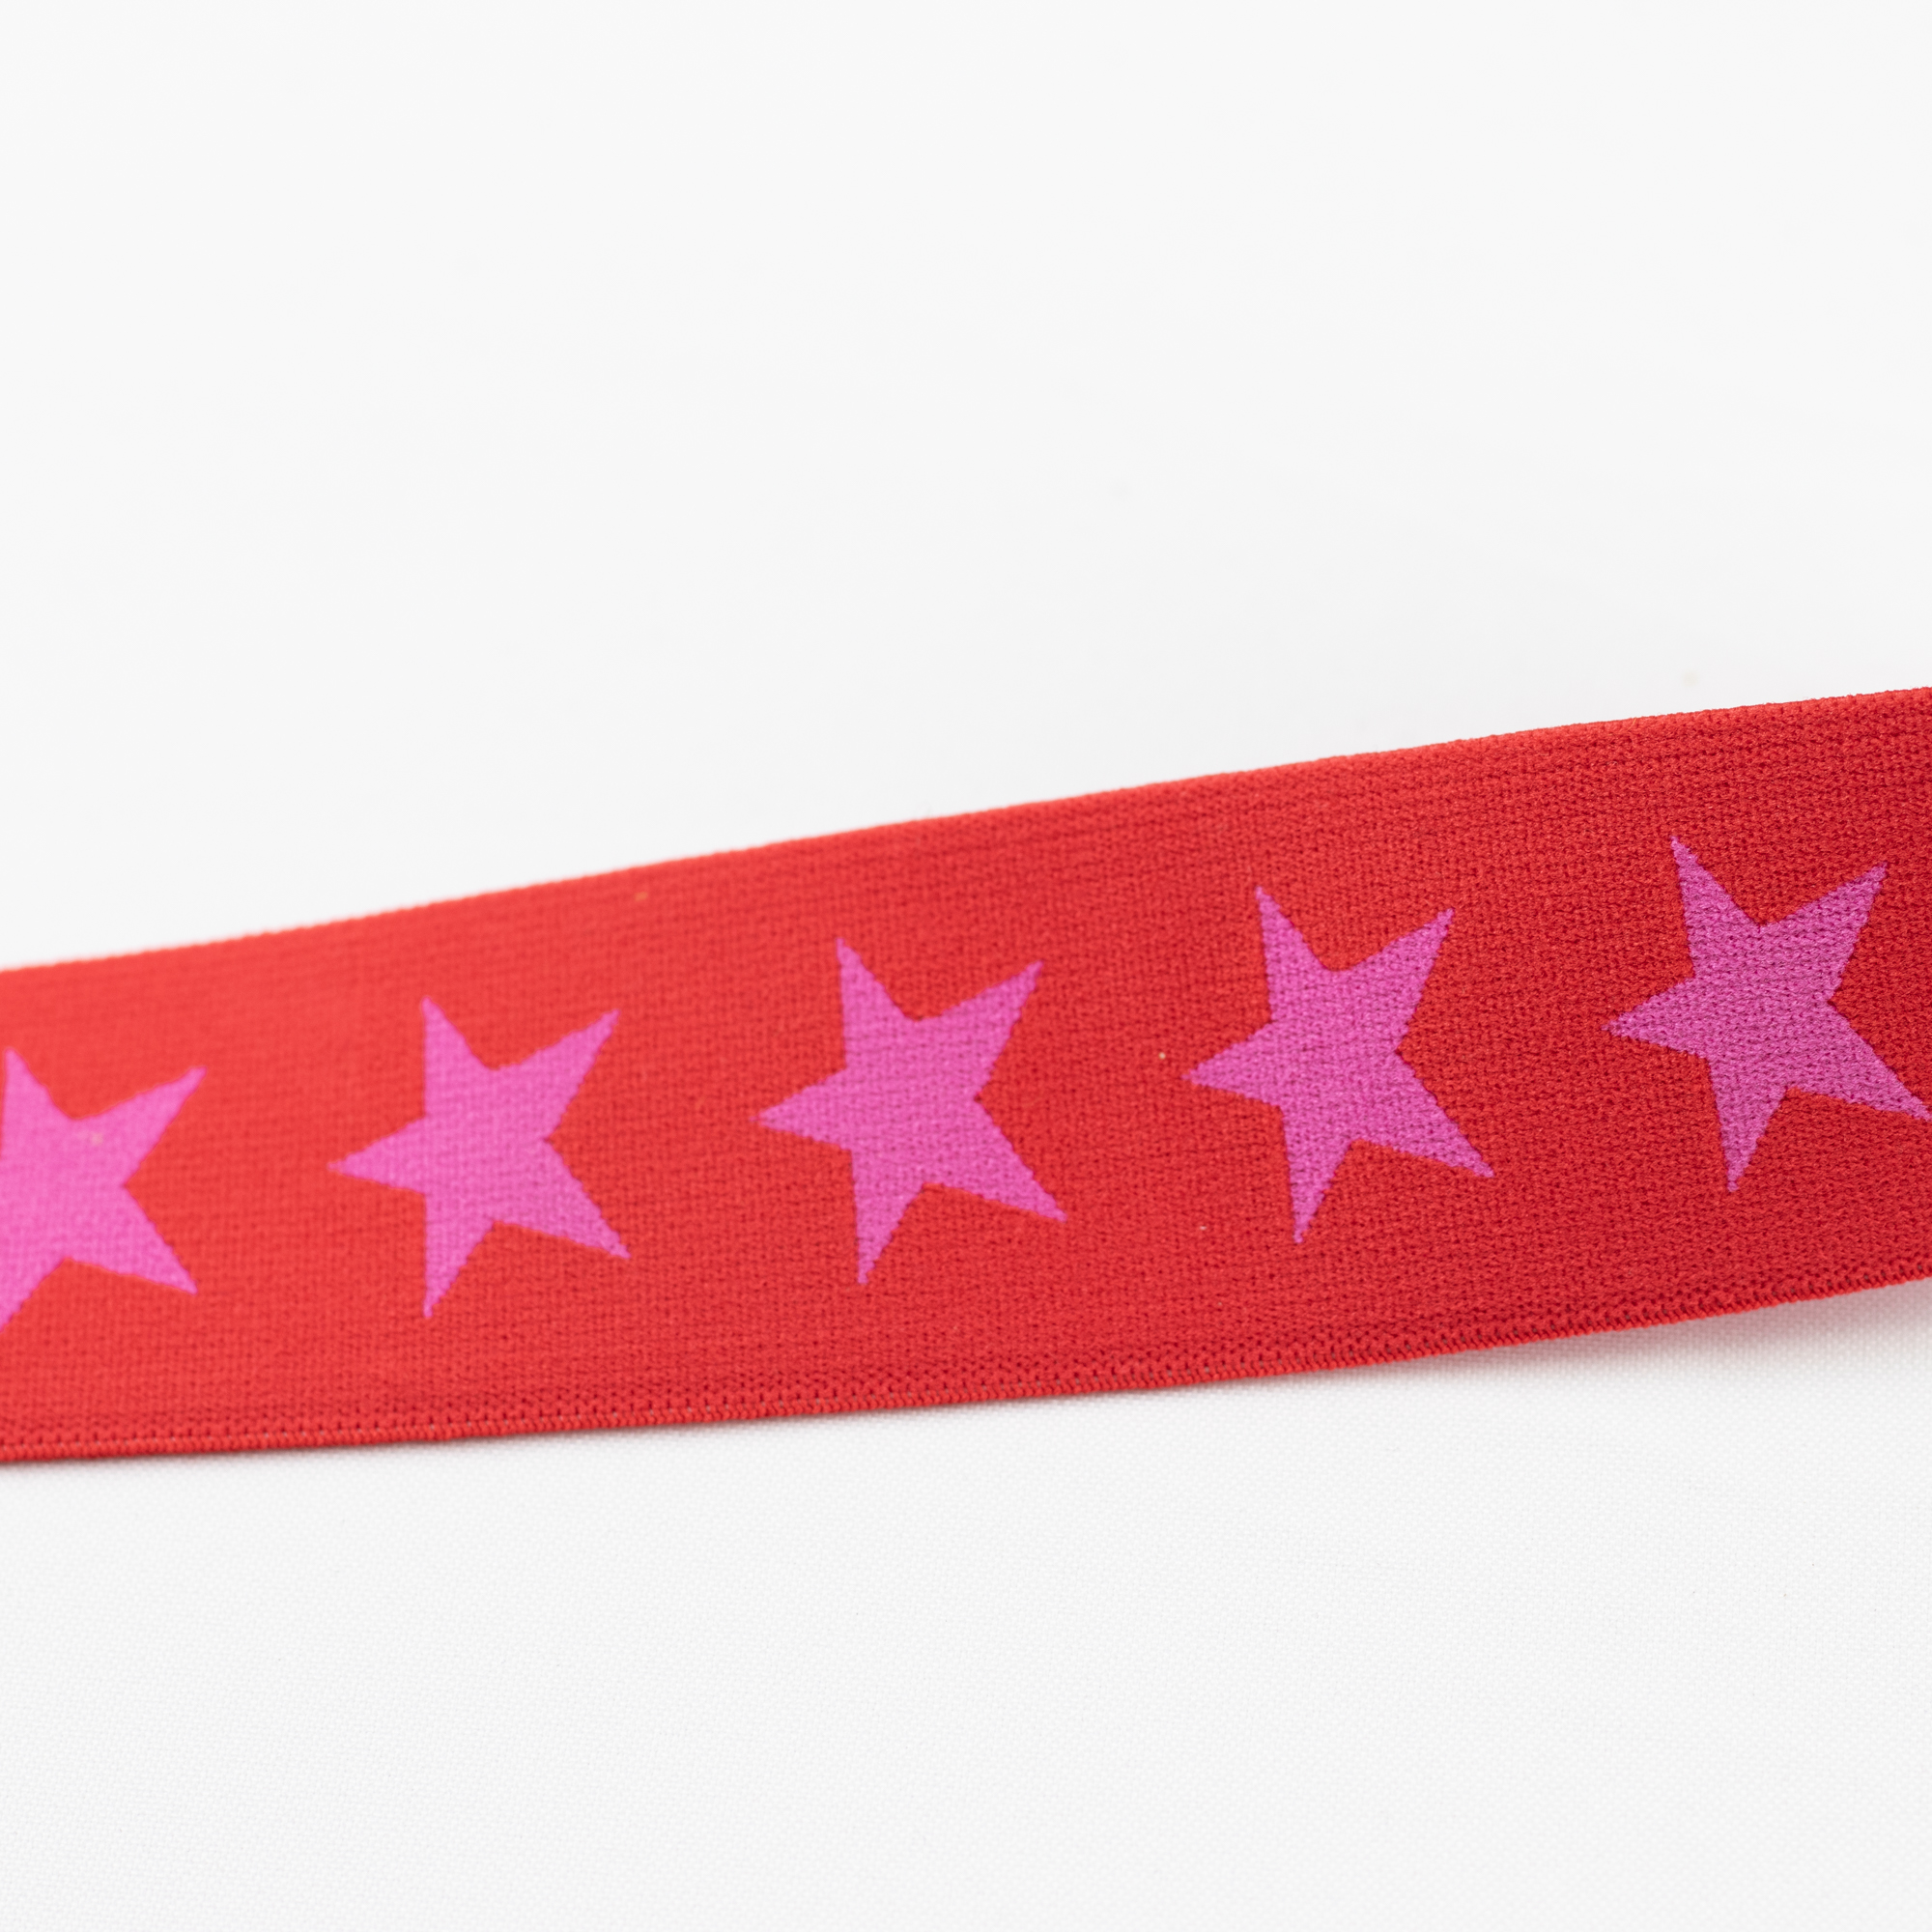 Gummiband Wäschegummi Sterne Rot Pink 4 cm